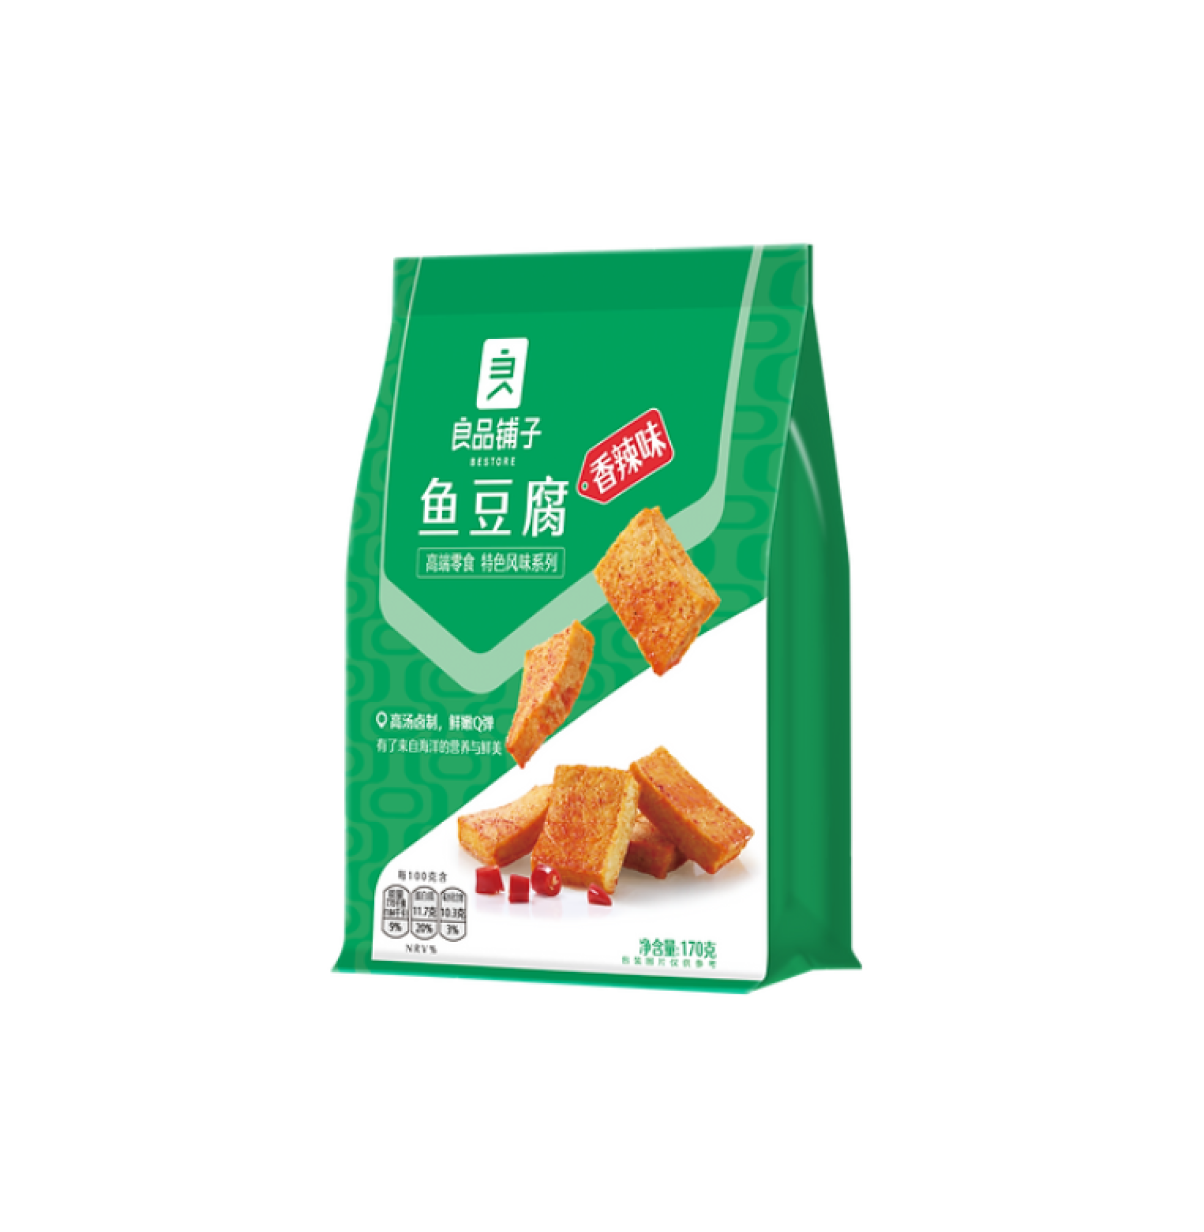 良品鋪子 魚豆腐 香 170g 18元/3包